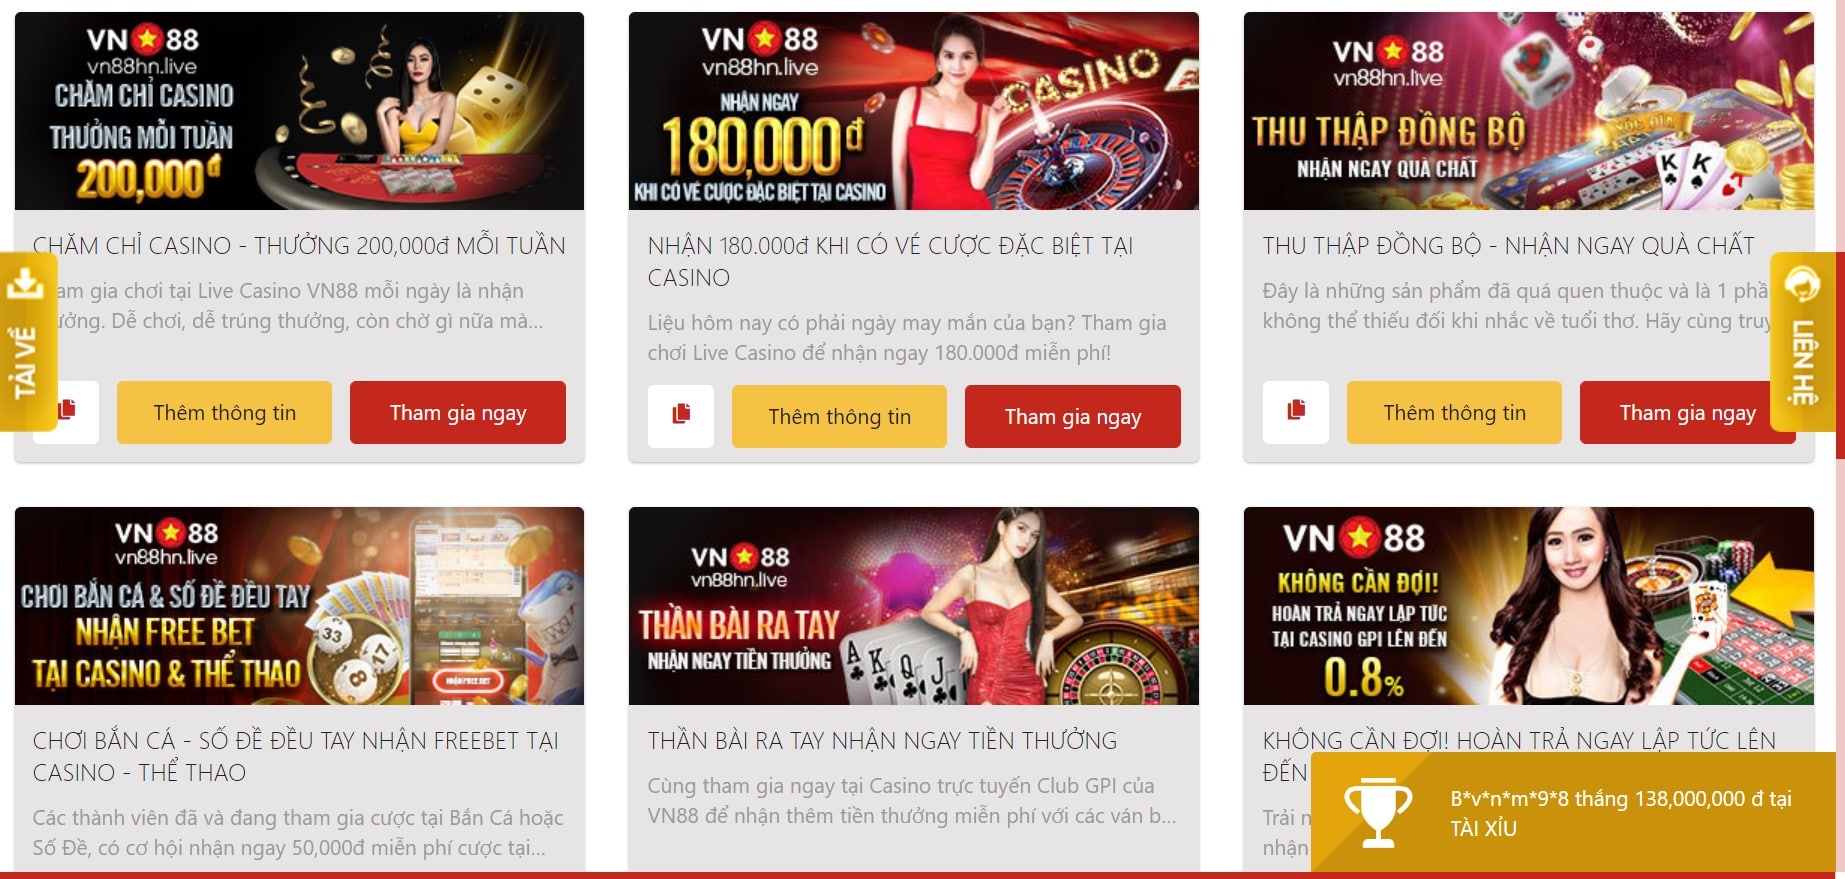 Casino VN88 và những khuyến mãi hot